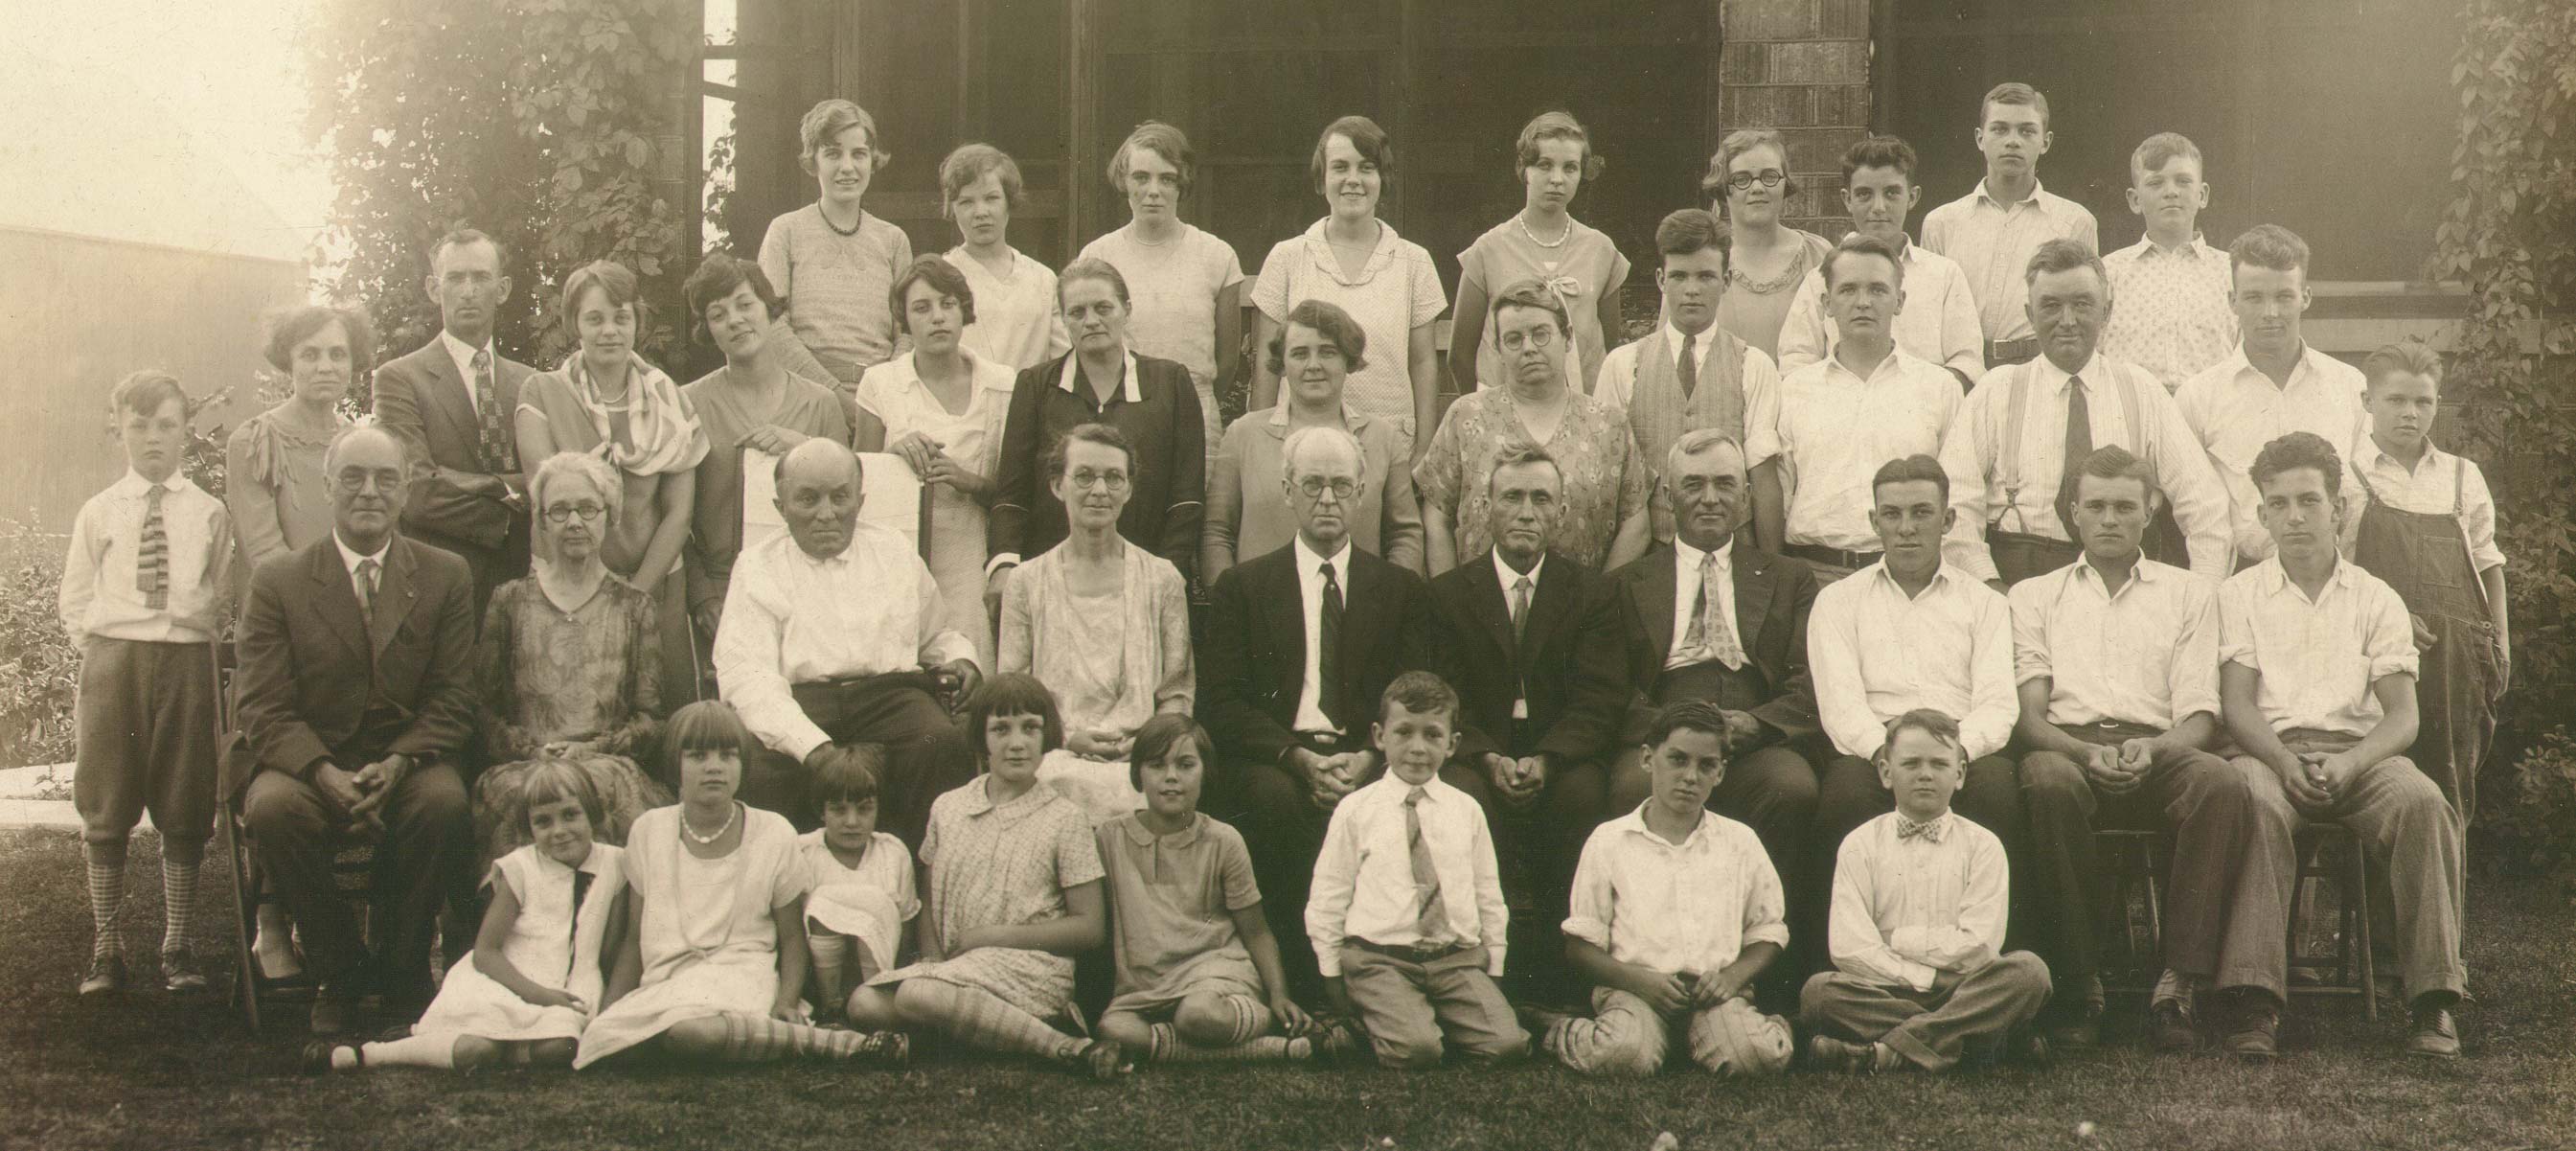 Mies reunion around 1928